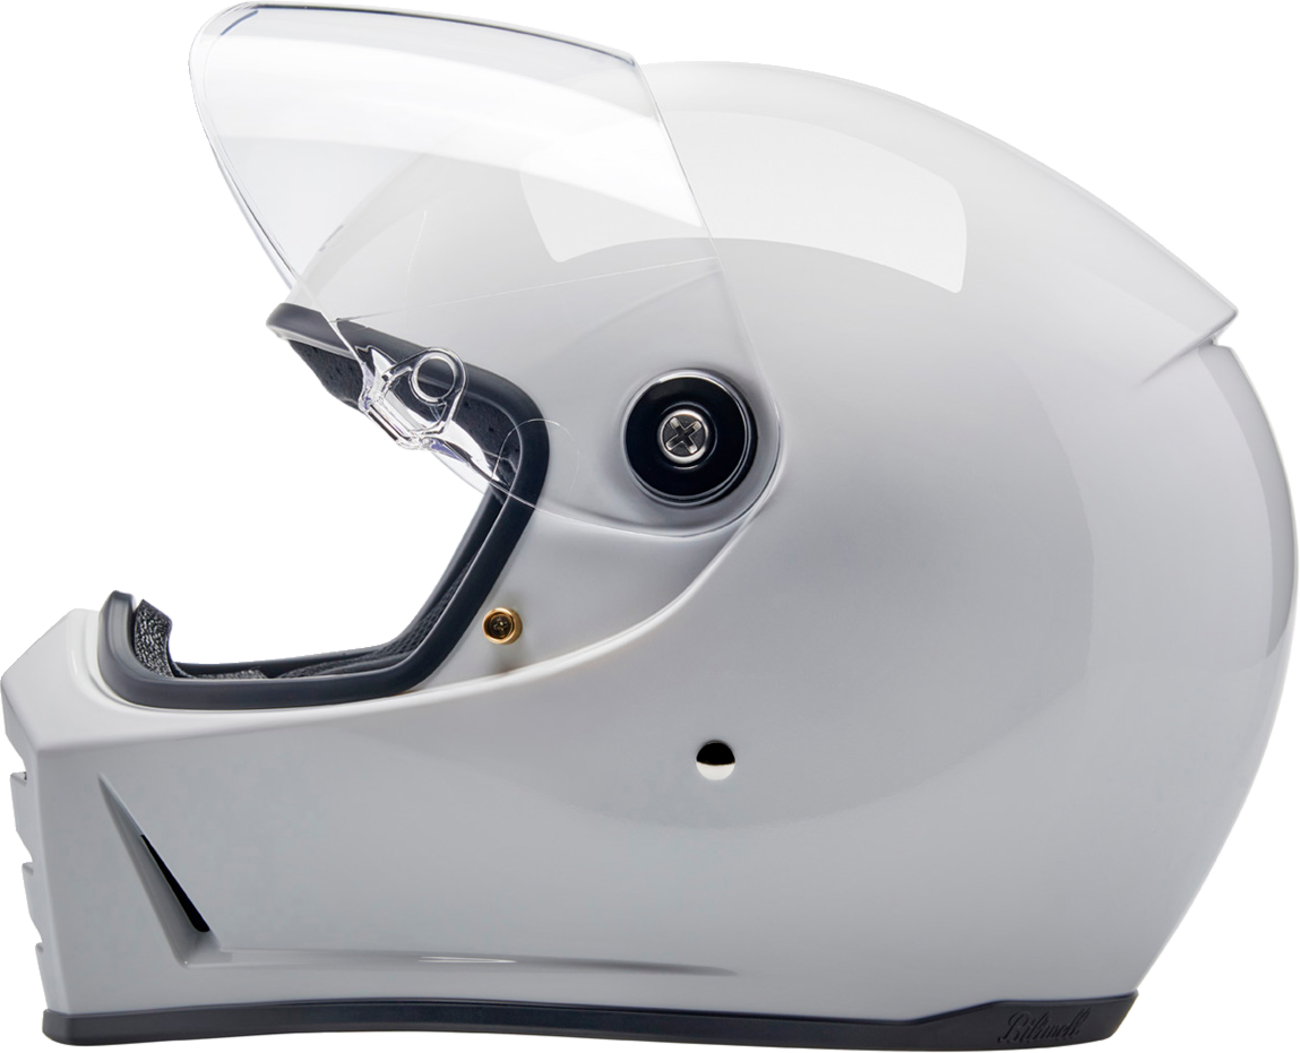 BILTWELL Lane Splitter Helmet - Gloss White - 2XL 1004-104-506